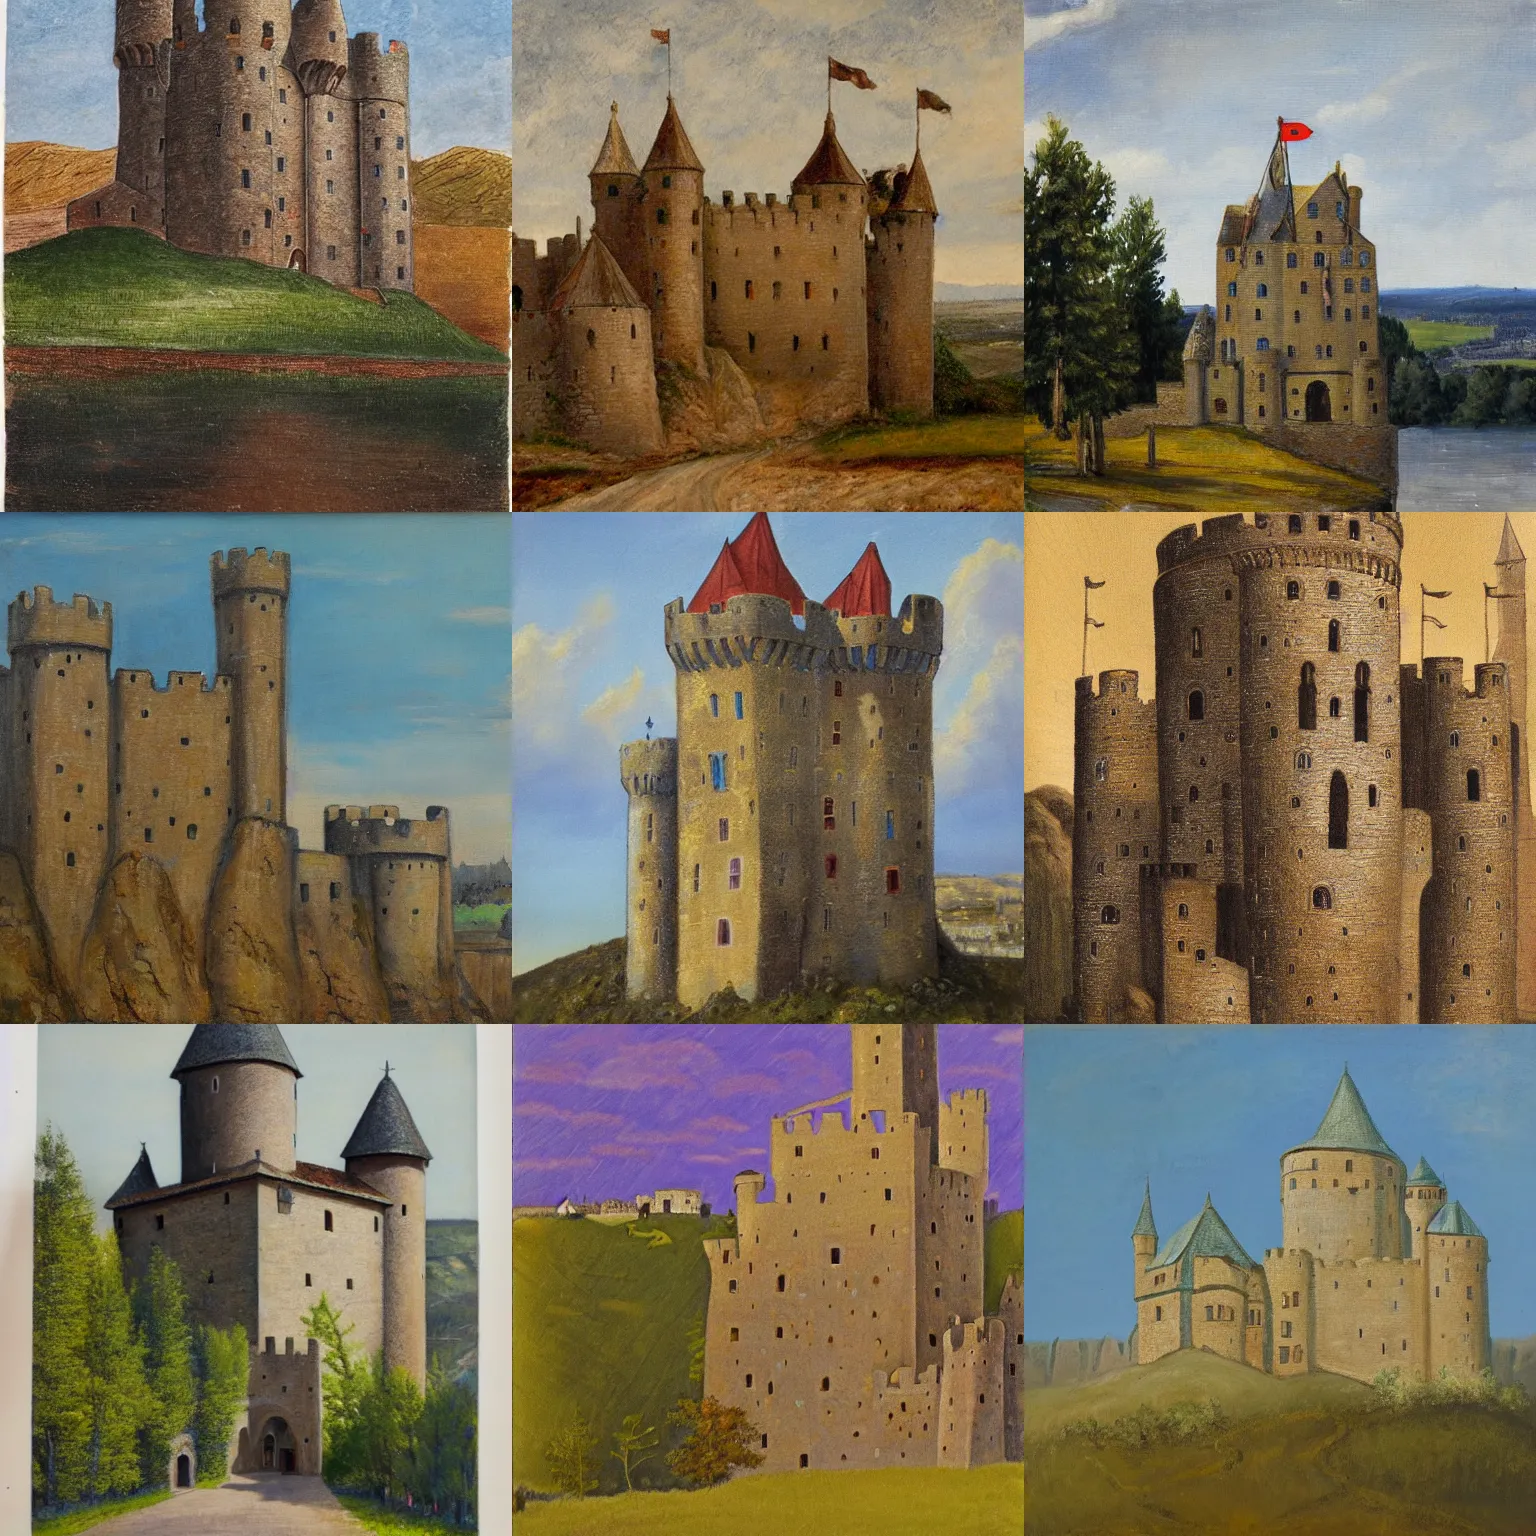 Prompt: medieval castle, esther rolick